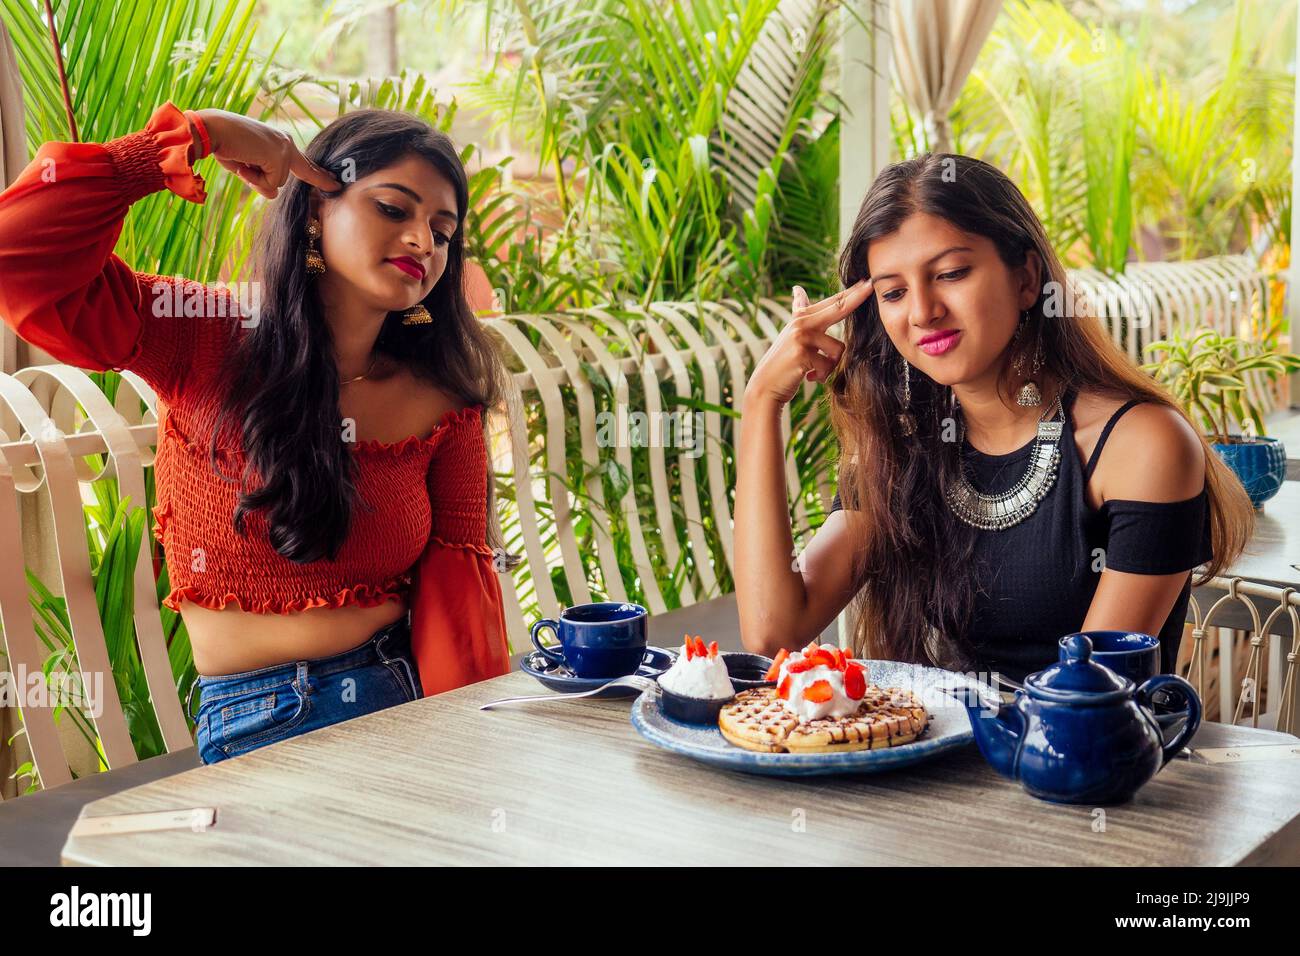 Traurige modische indische Freunde Paar von zwei Frauen, die cakes.friends lang erwartete Treffen Klatsch Studenten essen Pfannkuchen trinken Masala Tee zu sehen Stockfoto